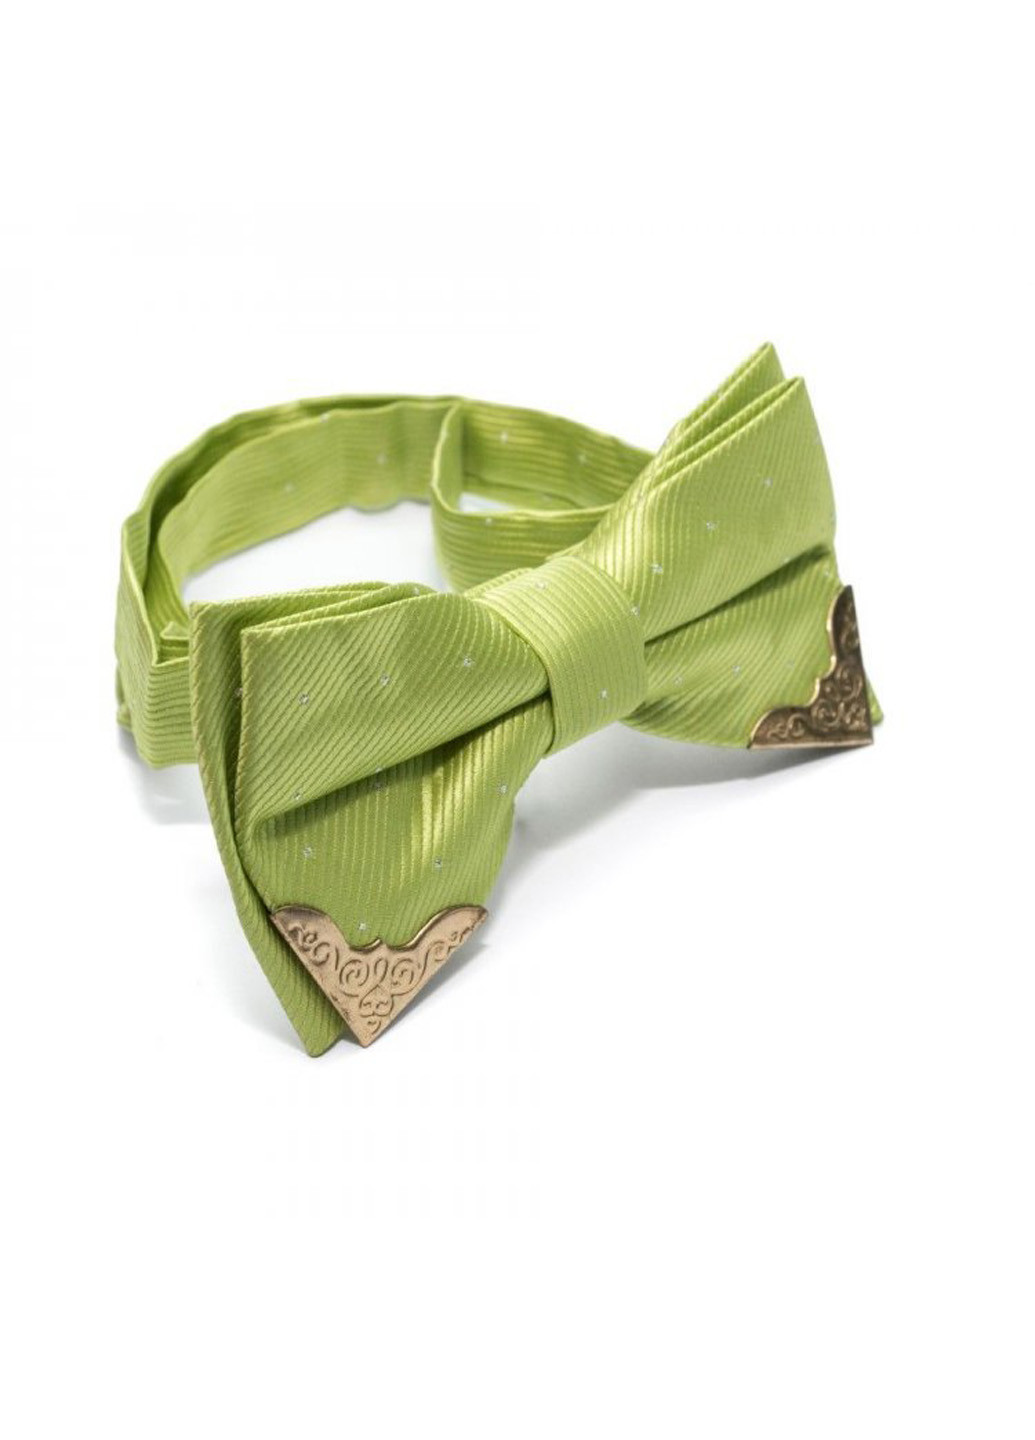 Мужской галстук бабочка 6,5х12 см Handmade (193791908)